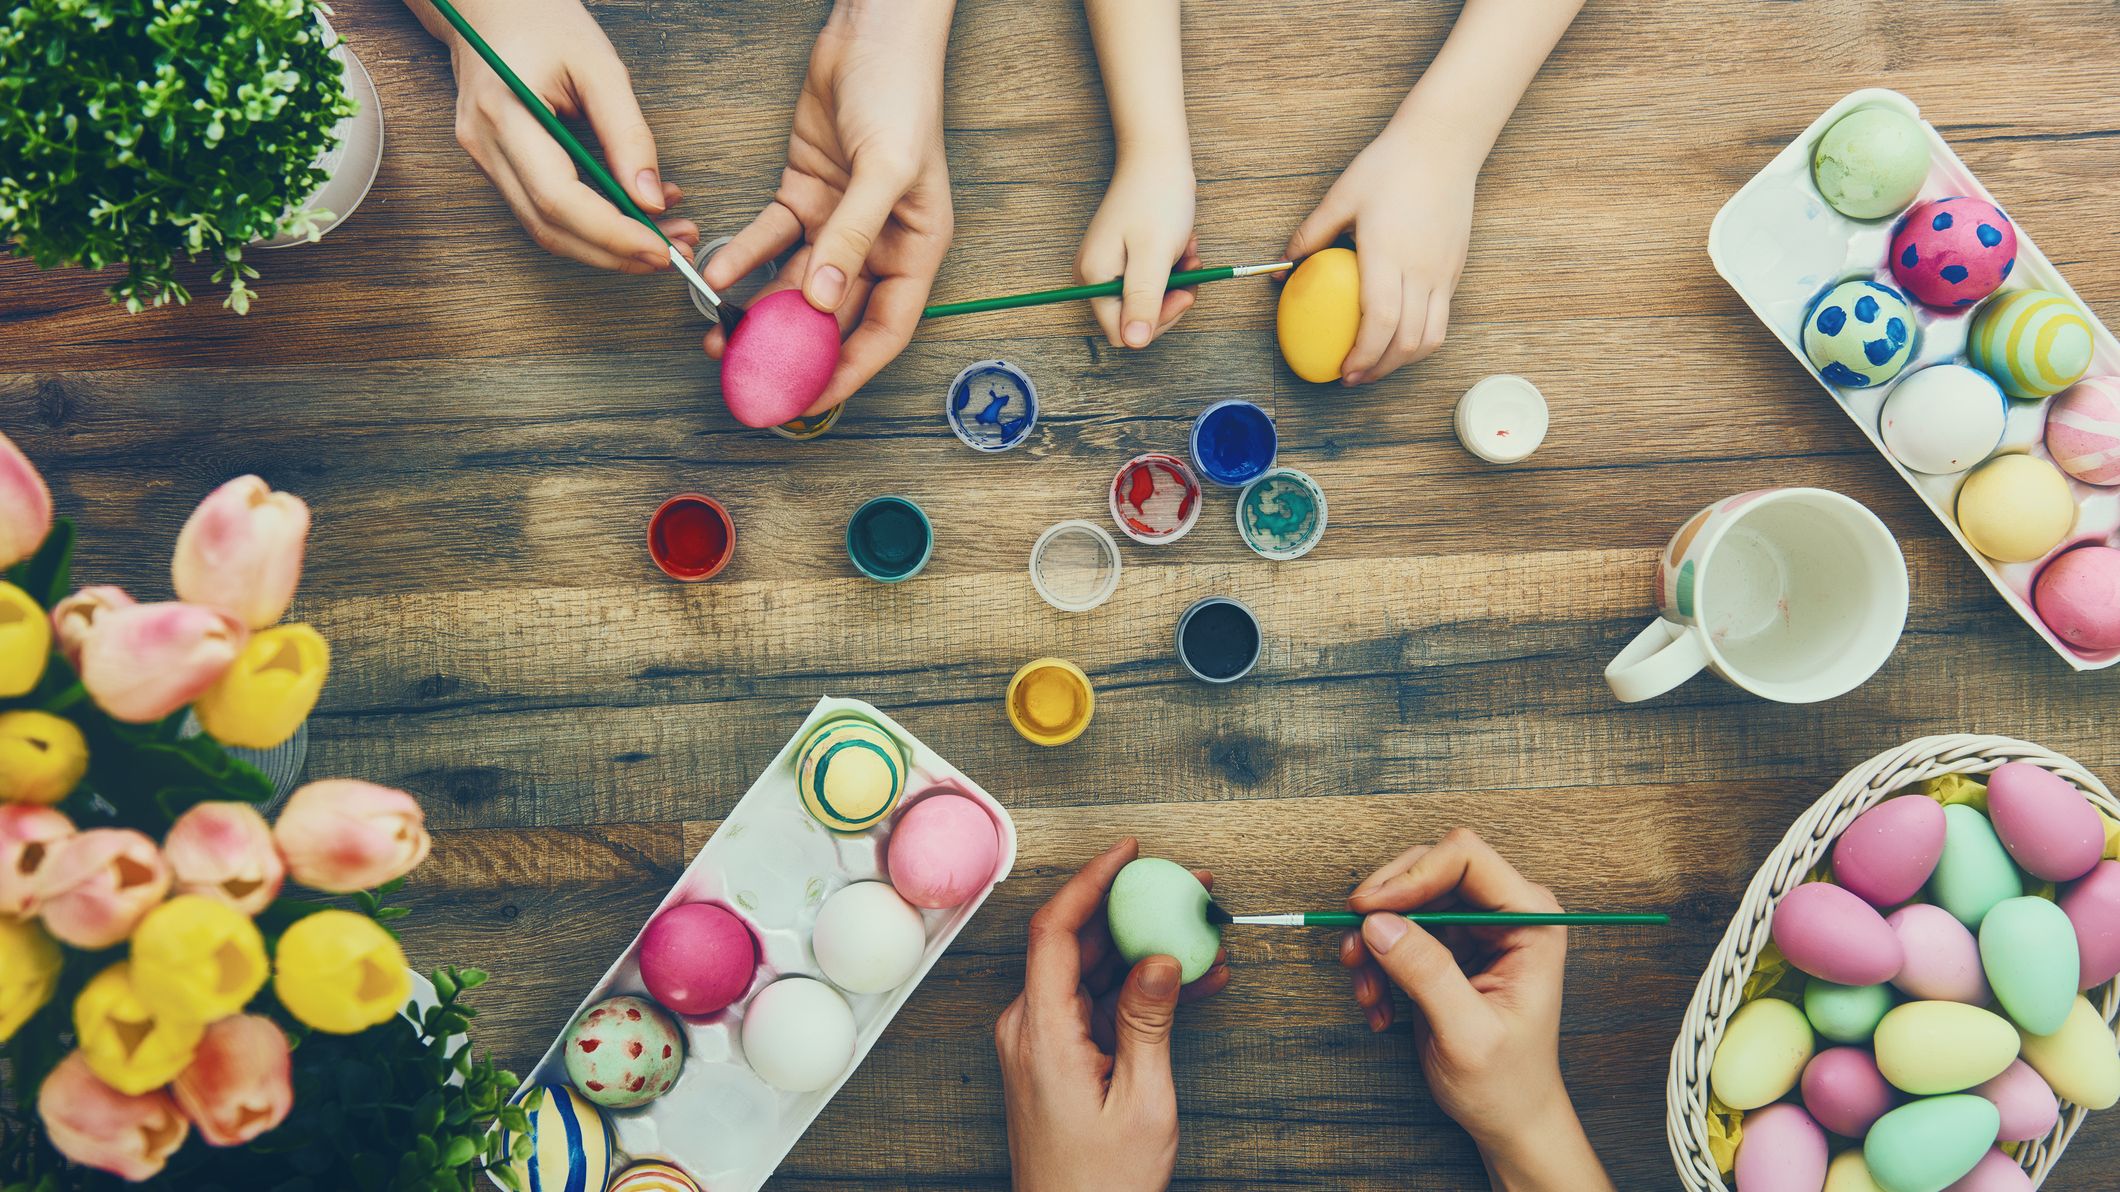 DIY : Fabriquez vous-même votre décoration de Pâques